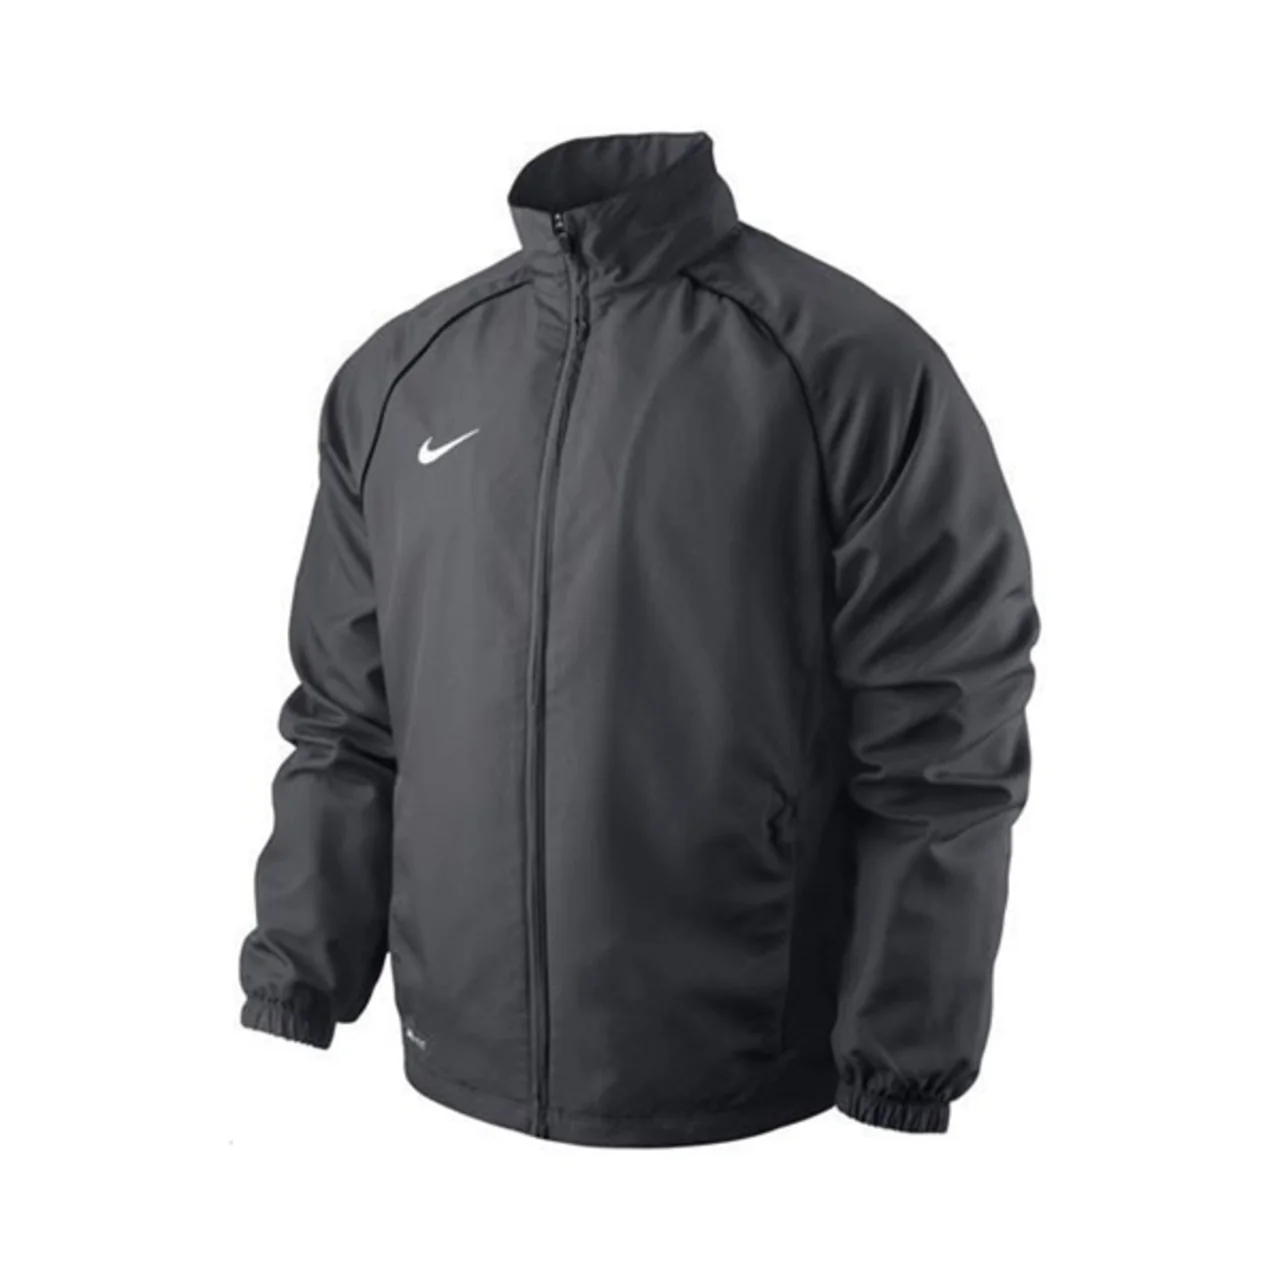 Nike Woven Sideline Jacket Grey